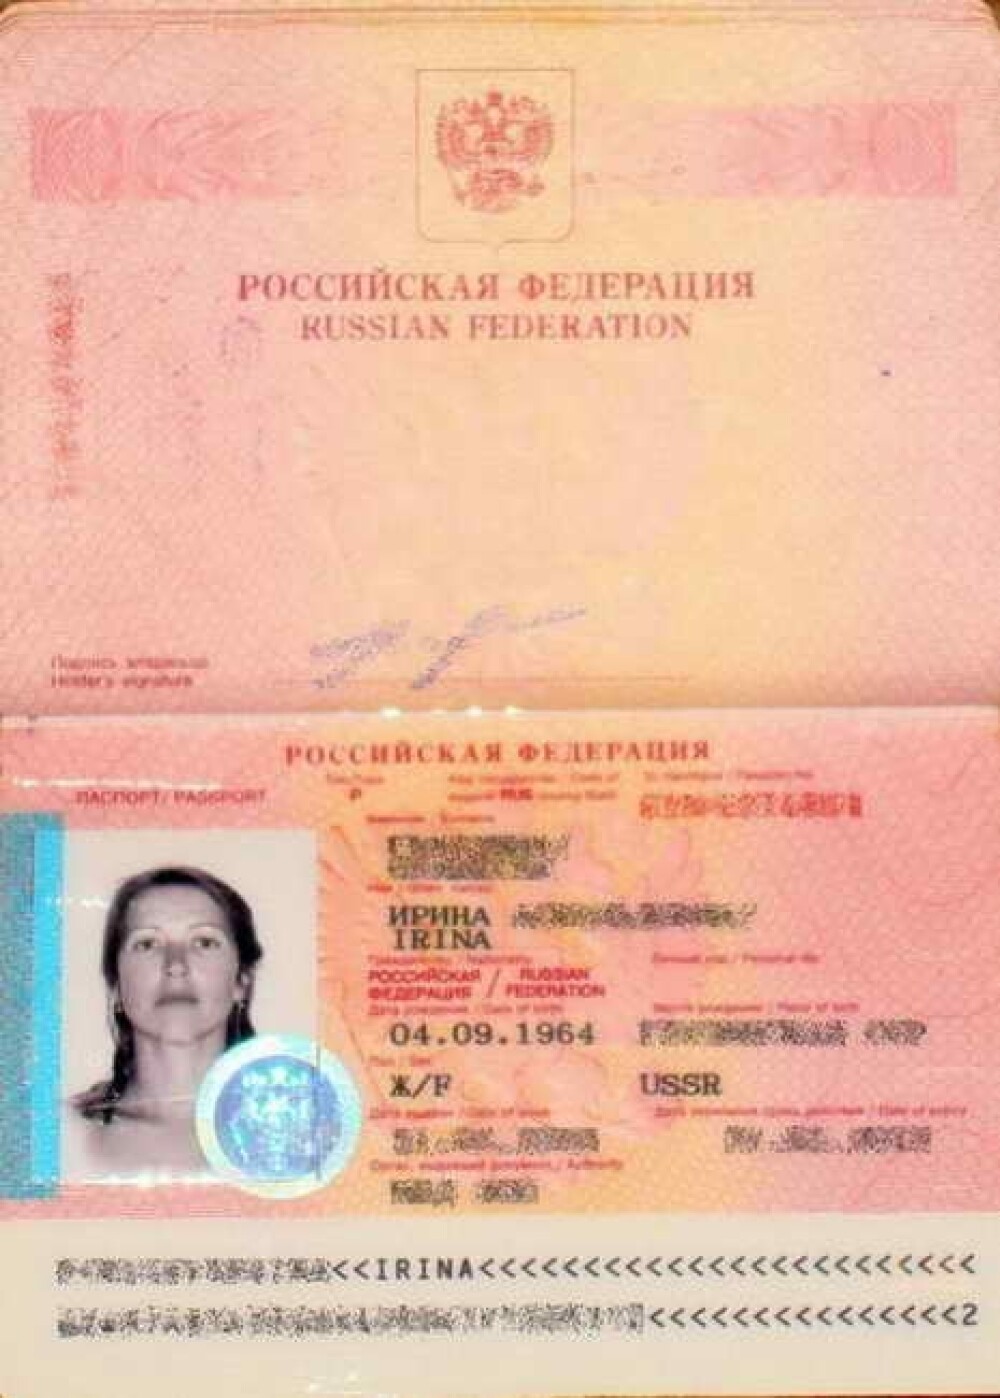 Imagini interzise minorilor. Secretul incredibil din spatele acestei imagini de pasaport. FOTO - Imaginea 1